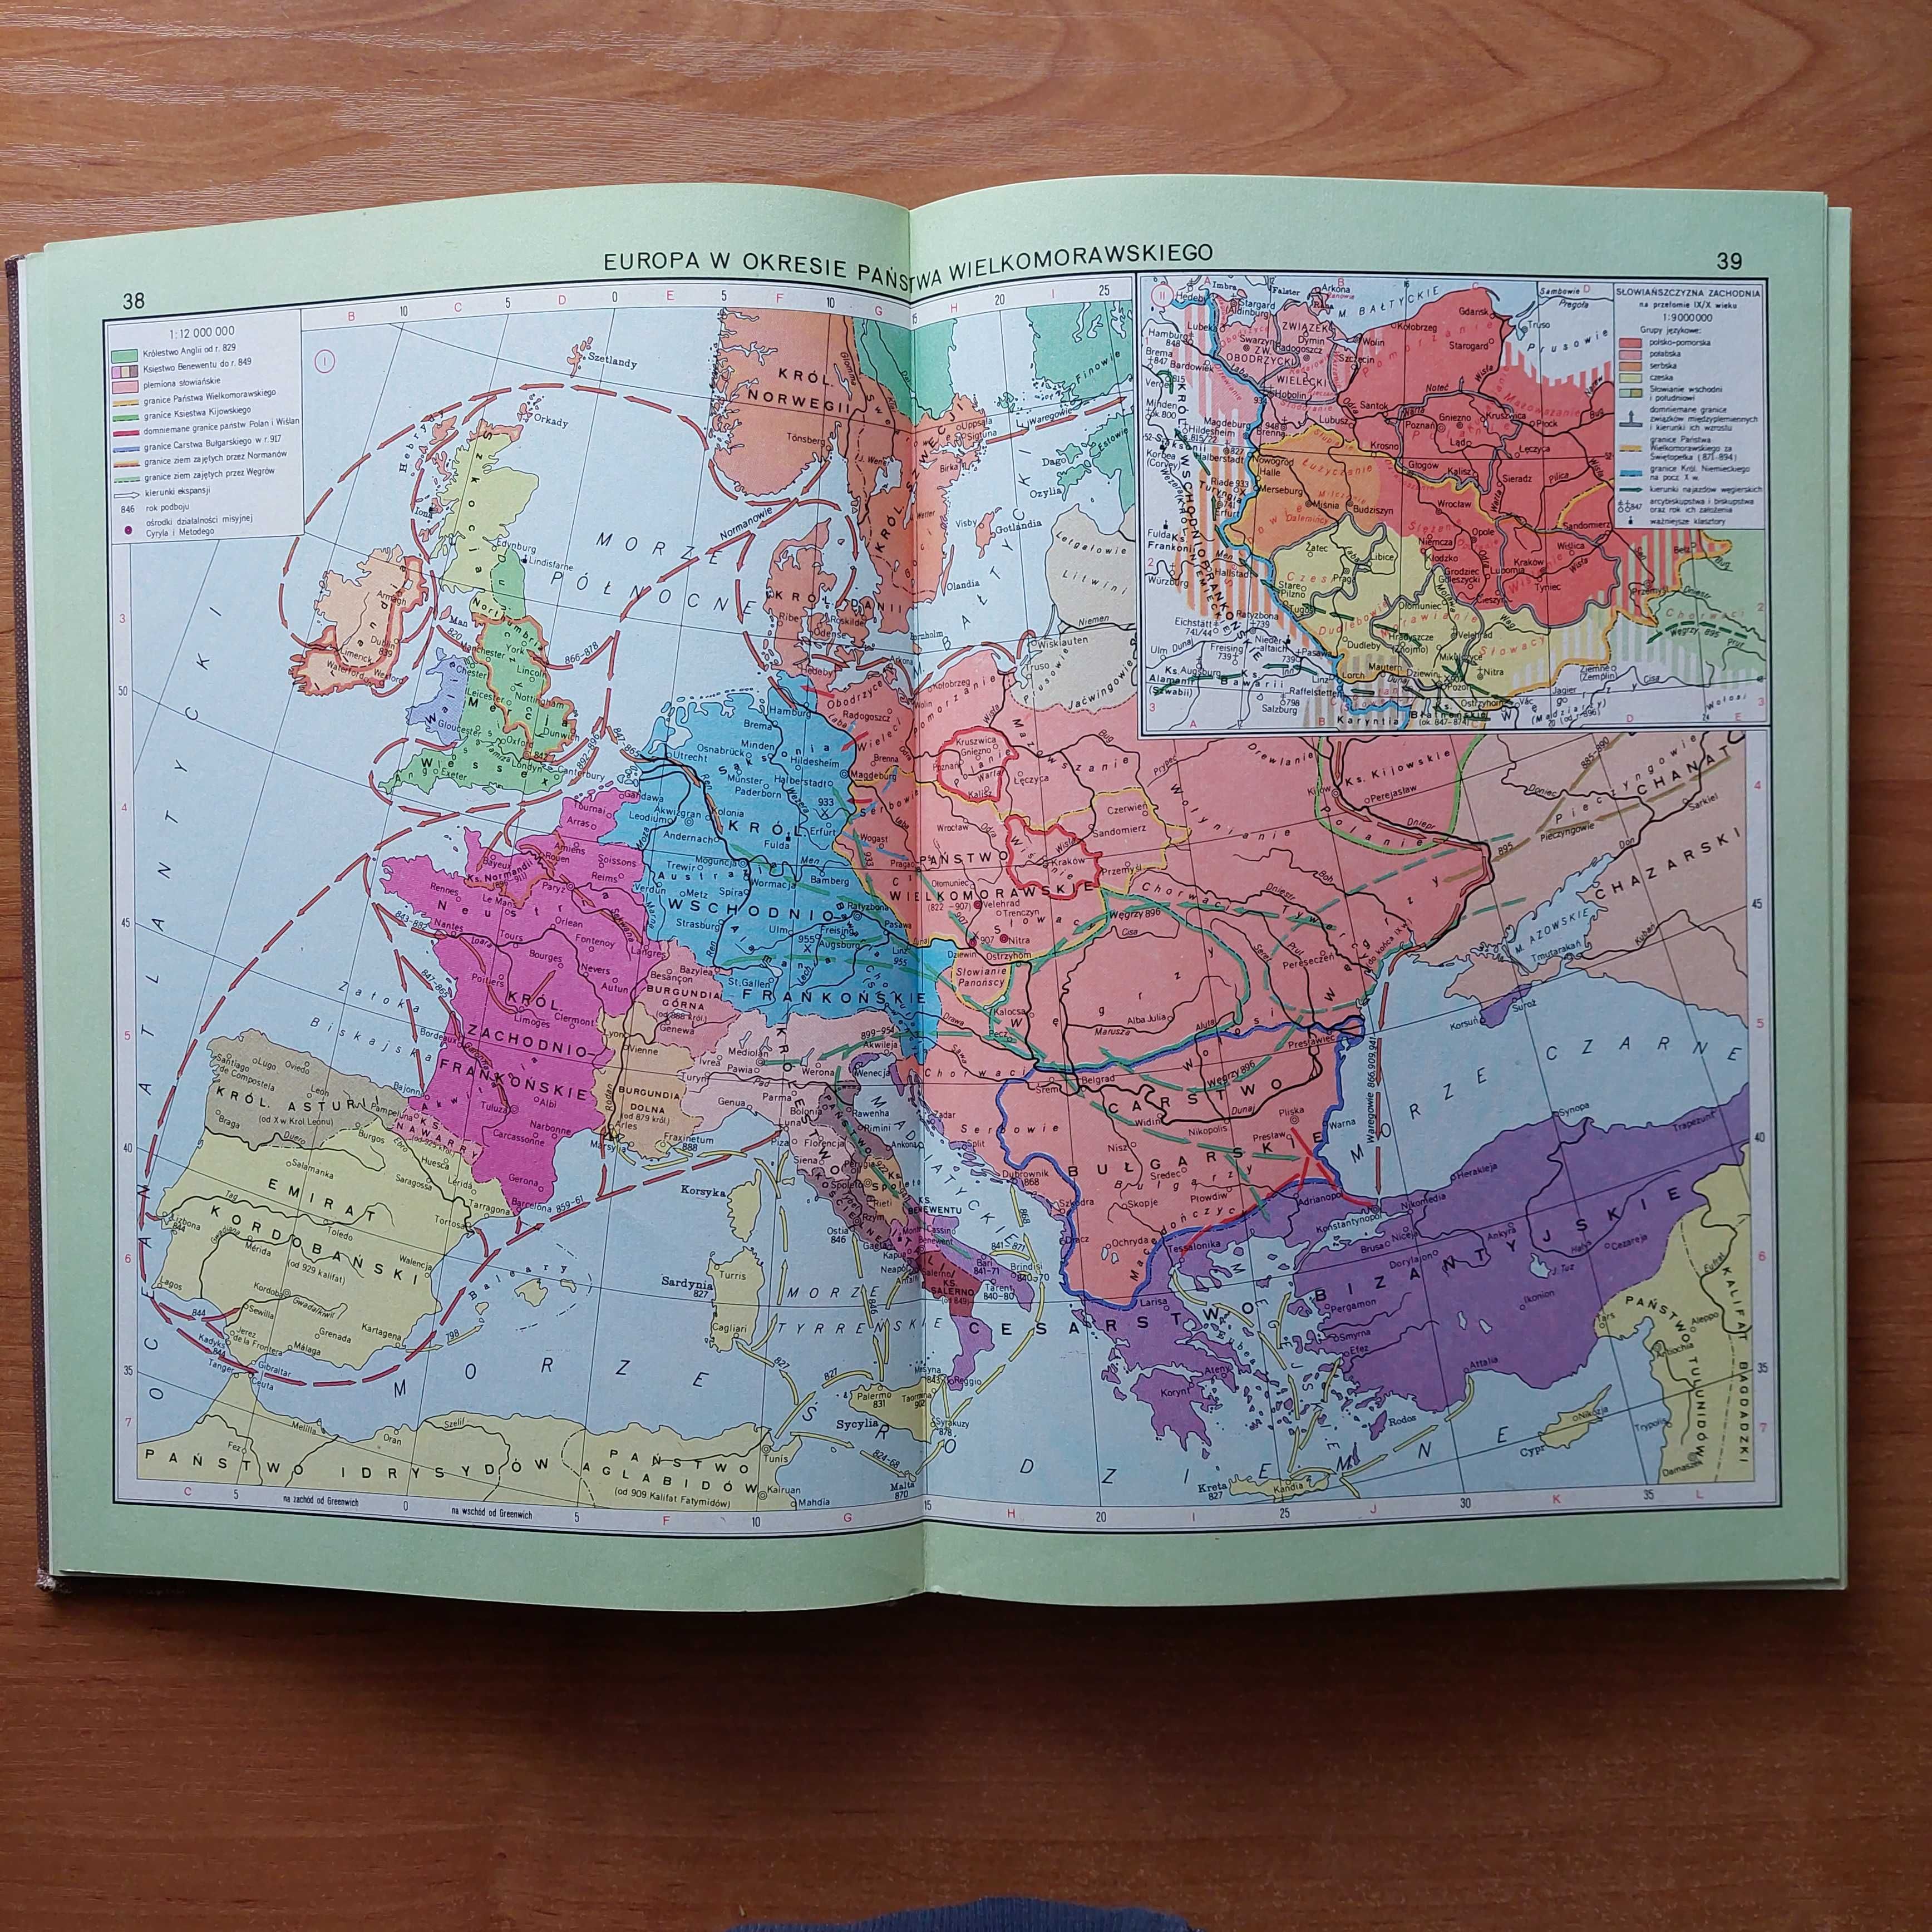 Atlas historyczny świata (1974)-pierwsze wyd. kartograficzne,J. Wolski